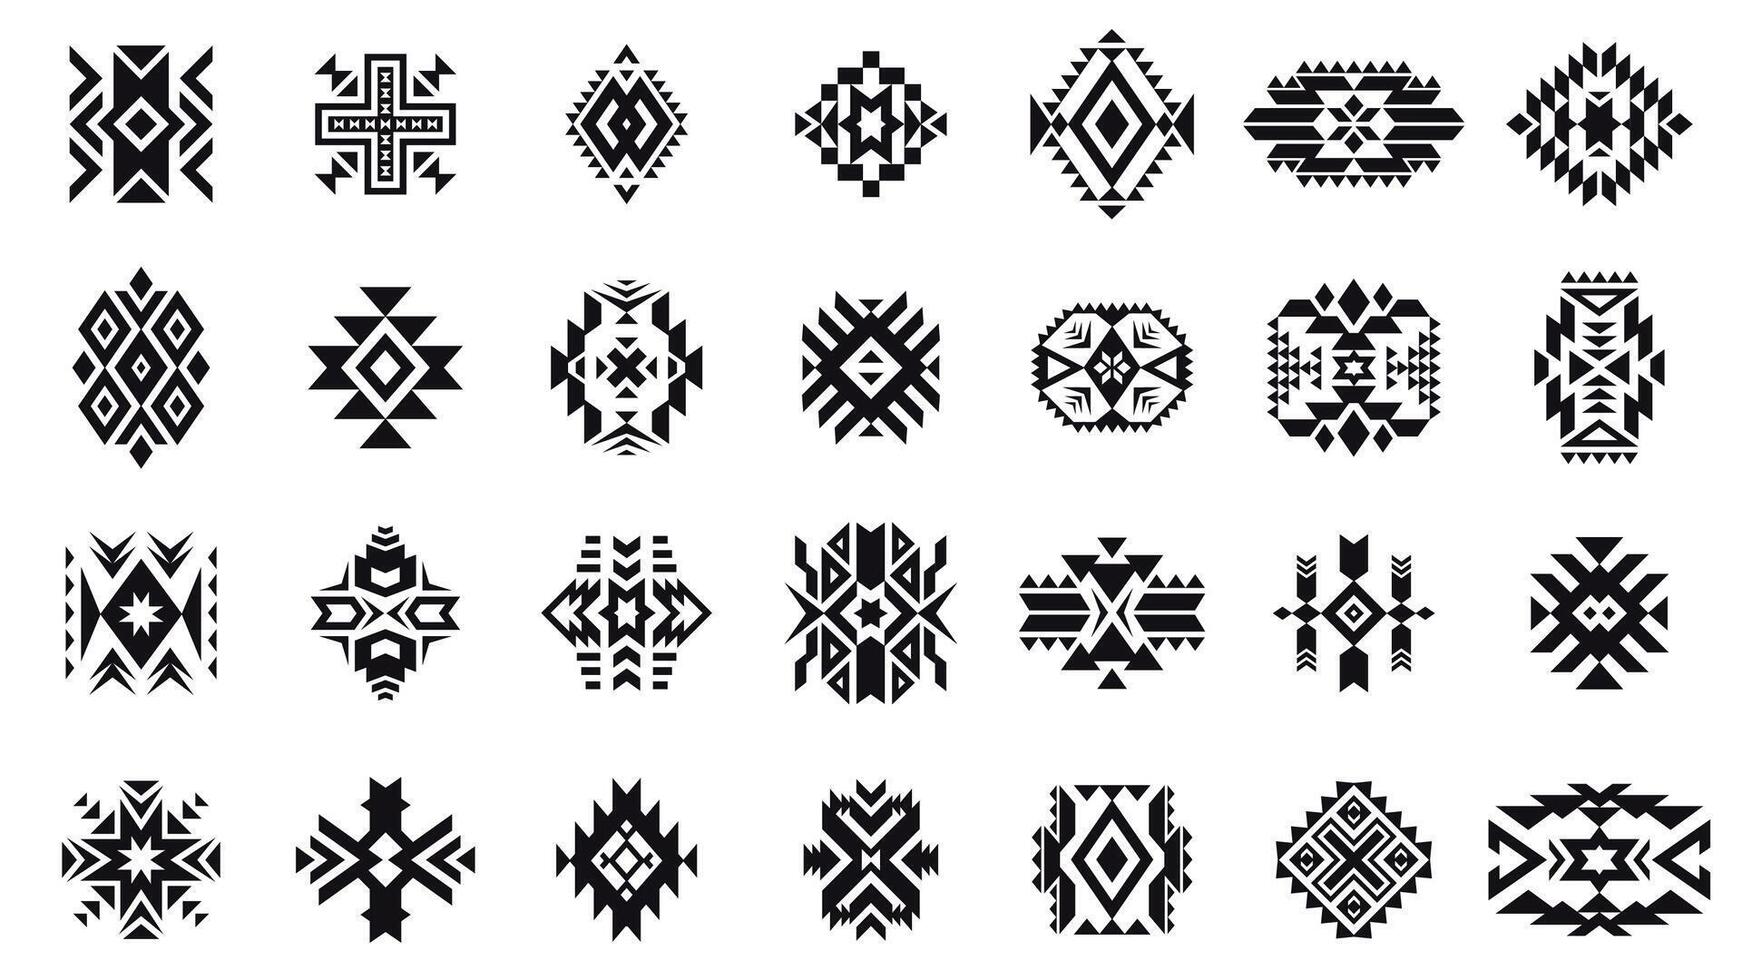 aztec tribal ornament. meetkundig etnisch motief elementen van inheems Amerikaans cultuur, oude Peru tribal traditioneel decoratief kunst emblemen. vector reeks